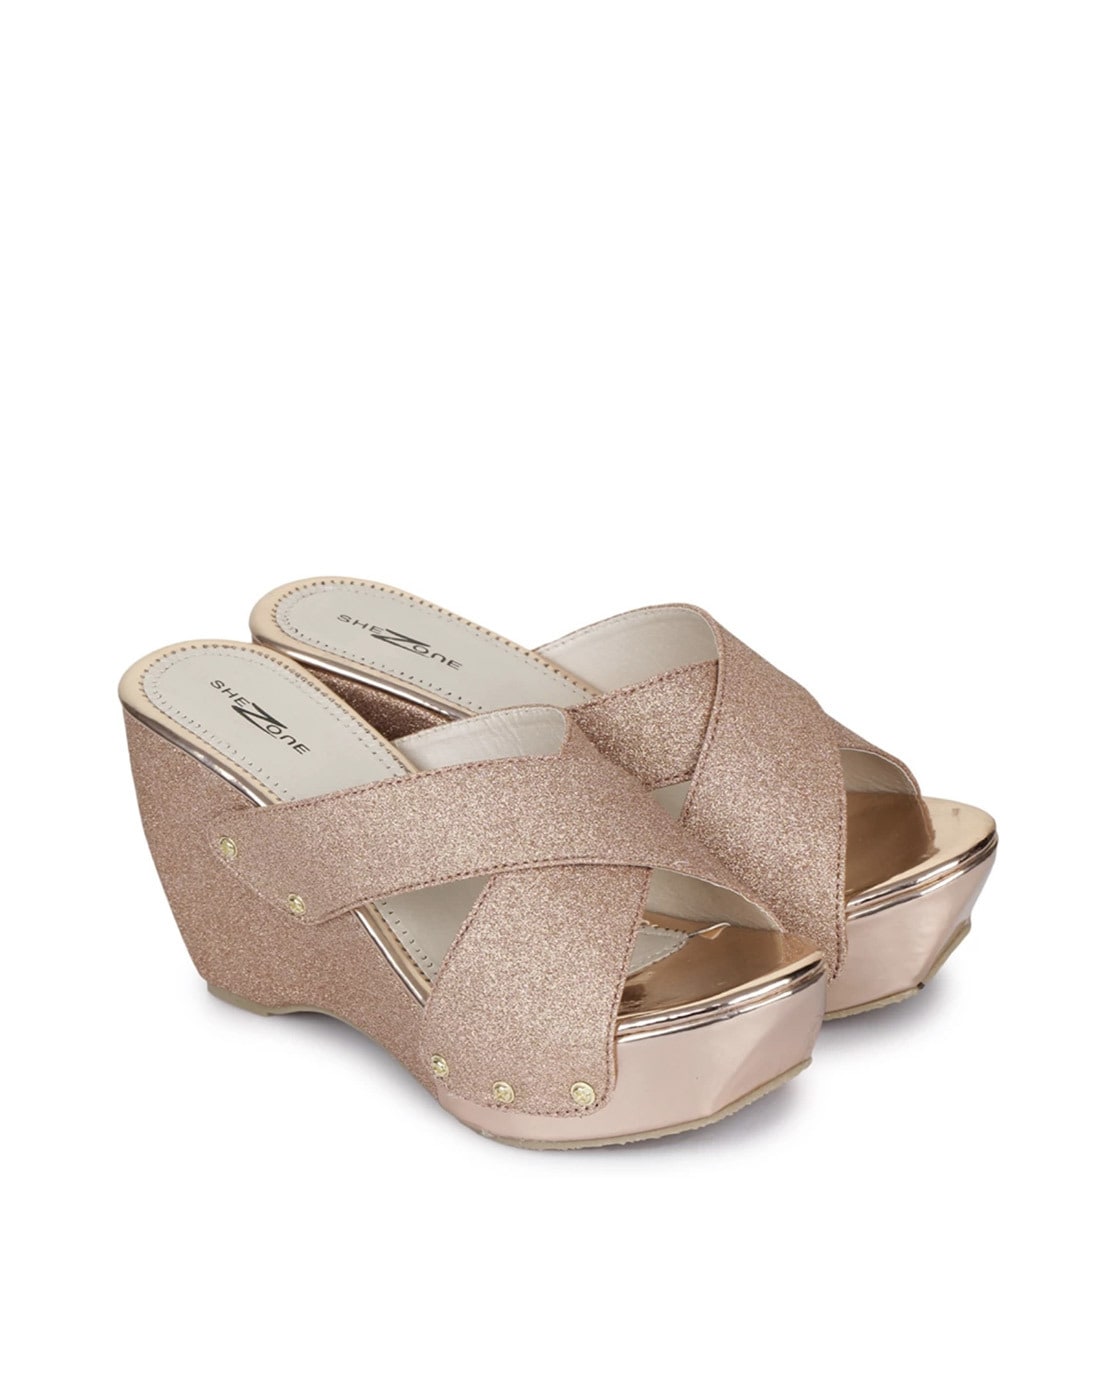 Ravishing for Women - SOLES Pink Wedges - SOLES - SOLES Online